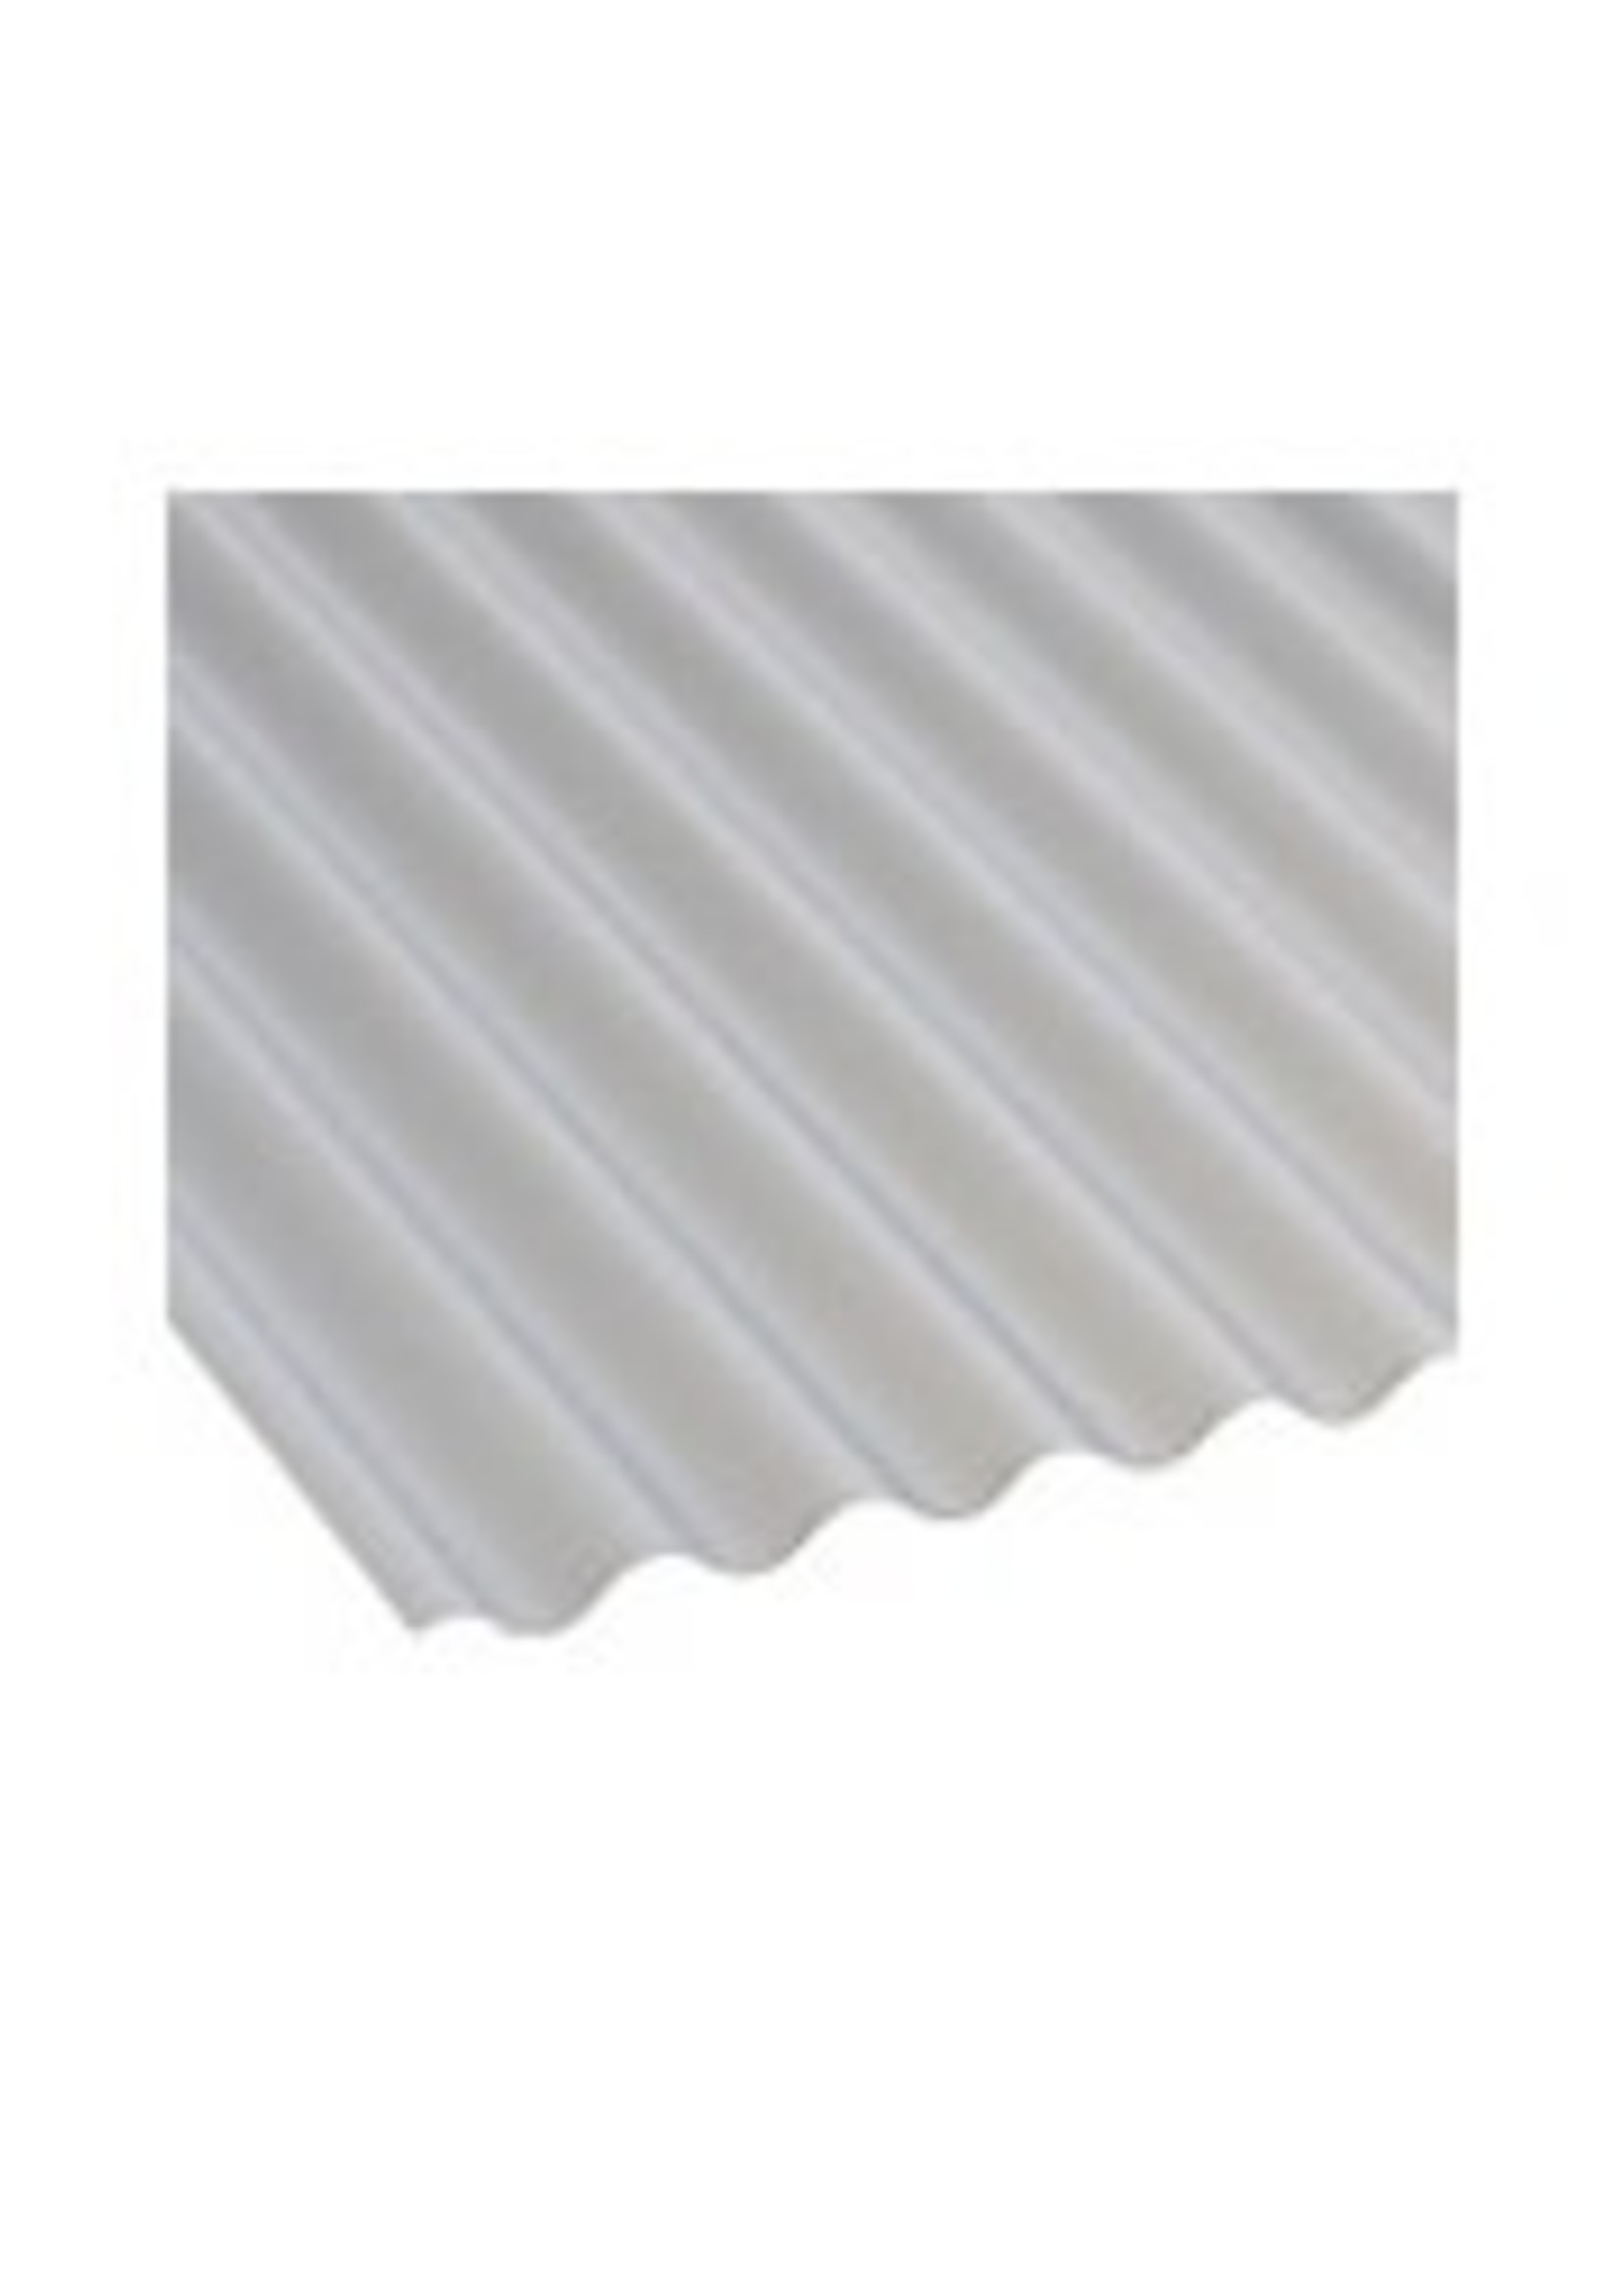 Vistalux Mini PVC Corrugated SheetIng - Various Sizes